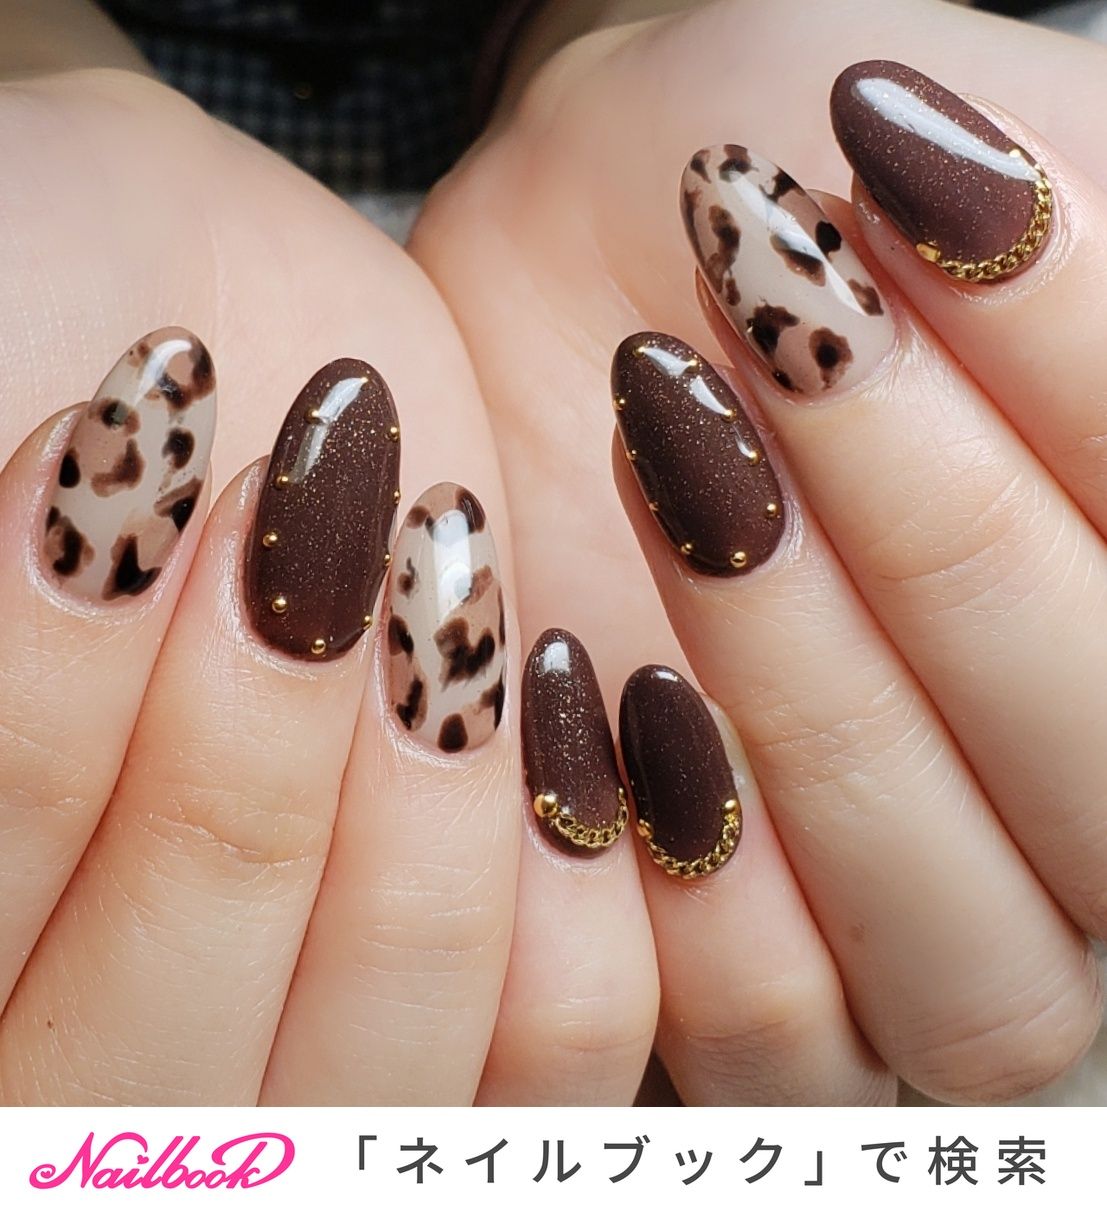 Тигровые ногти дизайн. Маникюр в коричневых оттенках. Леопардовые ногти. Ногти в коричневых тонах. Ногти с леопардовым принтом.